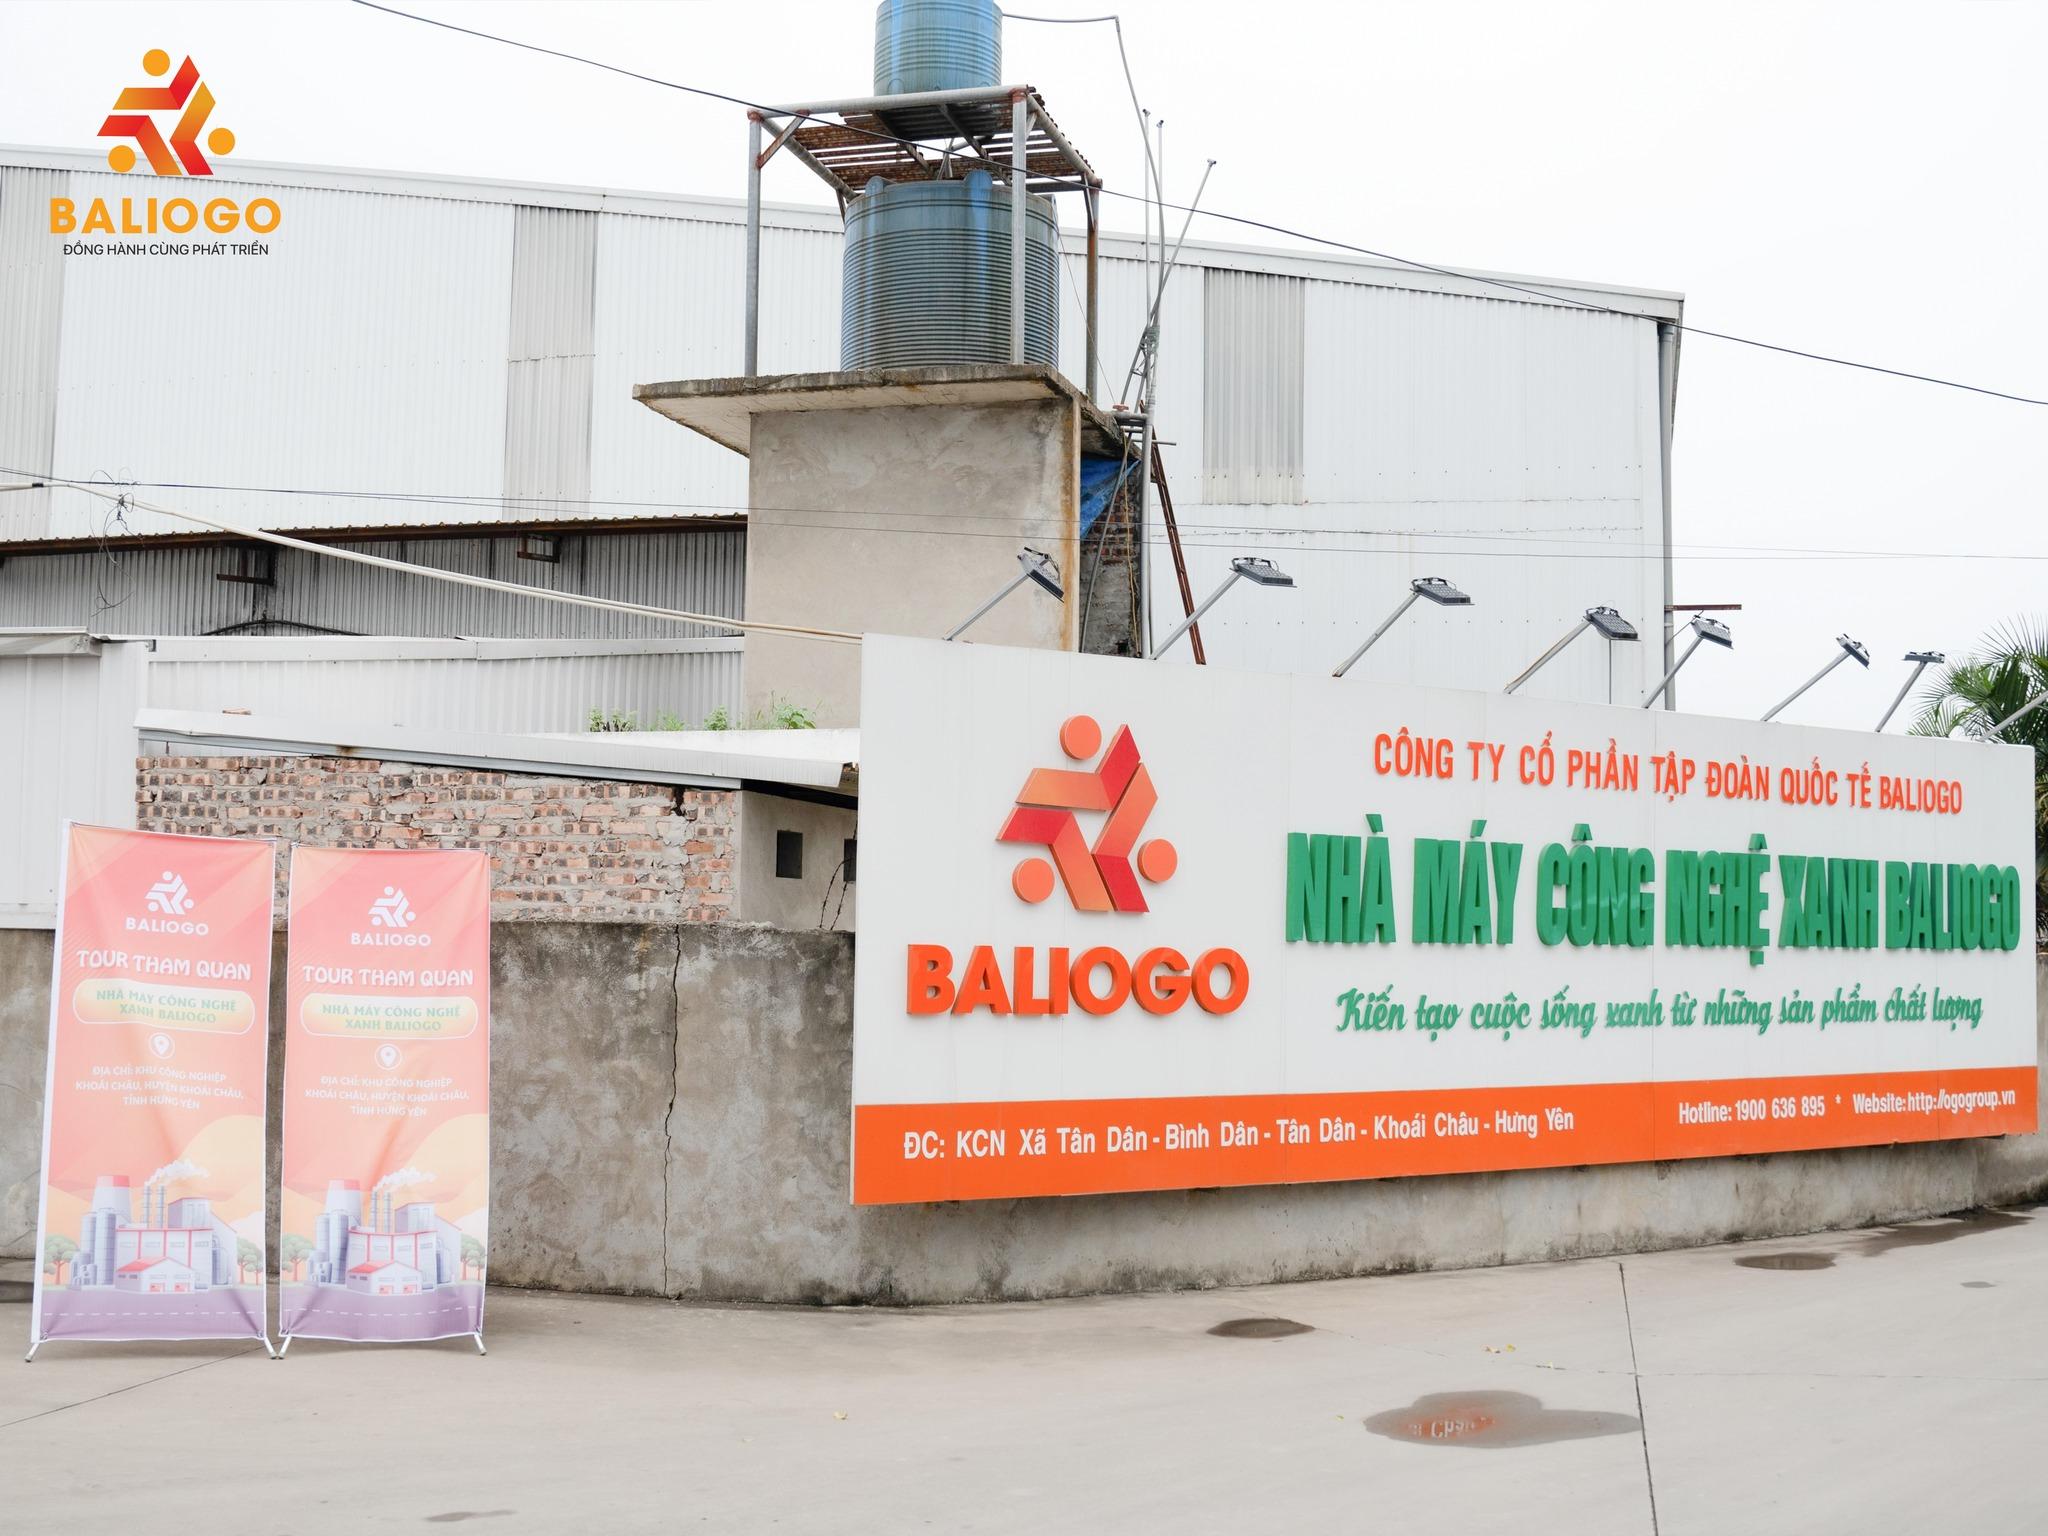 Tập đoàn Baliogo: Suy thoái kinh tế, doanh nghiệp nên “bung ra” hay thu hẹp? - 5